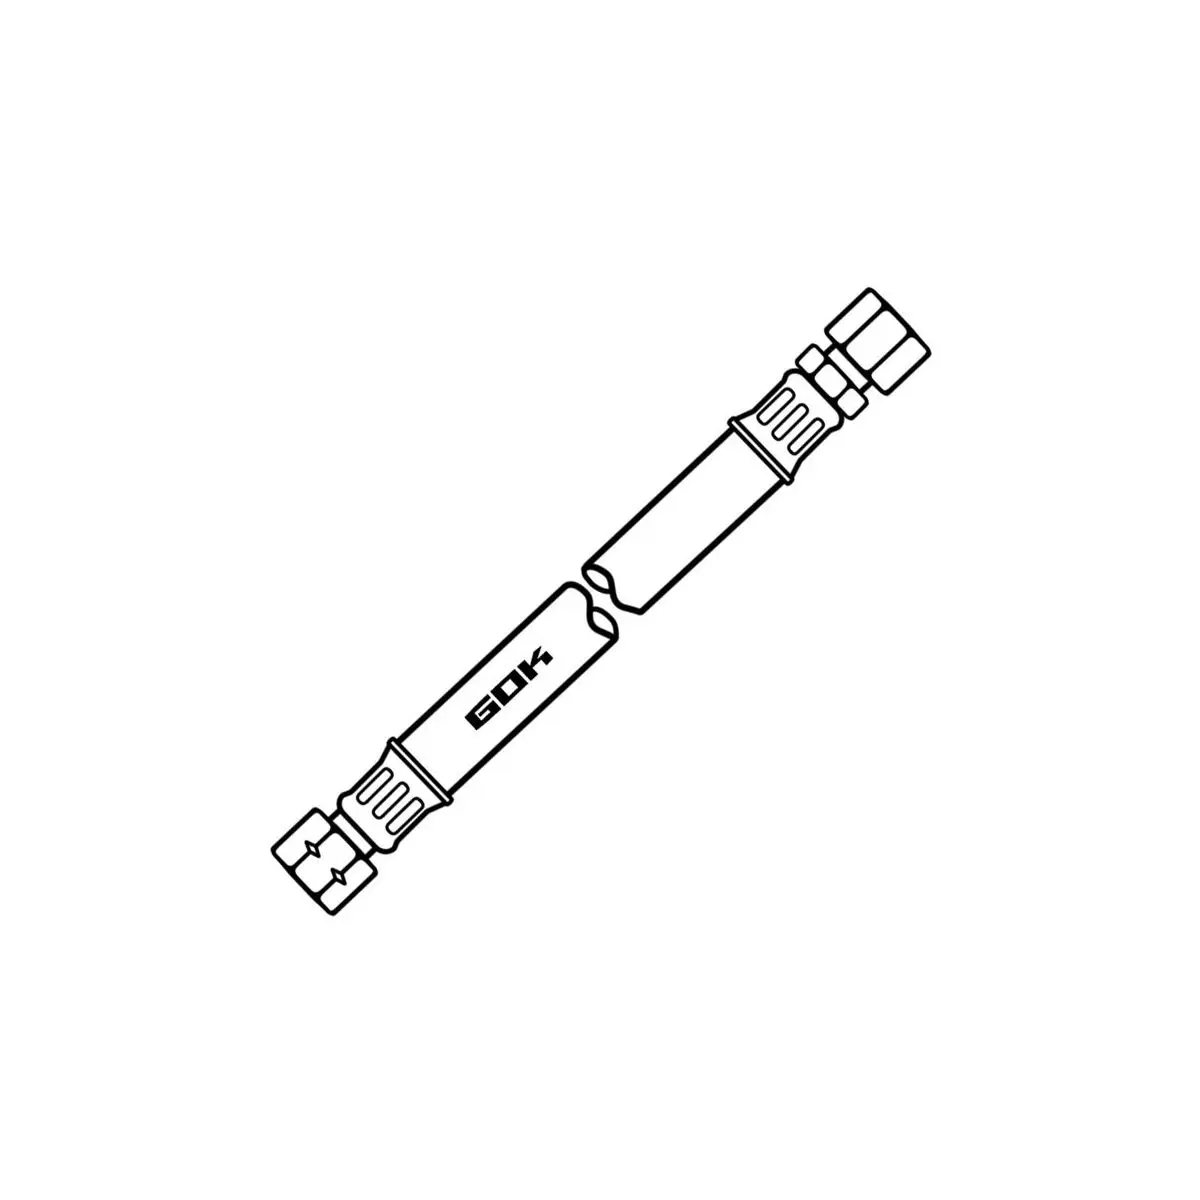 Strednotlakové hadicové vedenie - 400 mm, RVS 8, balené SB